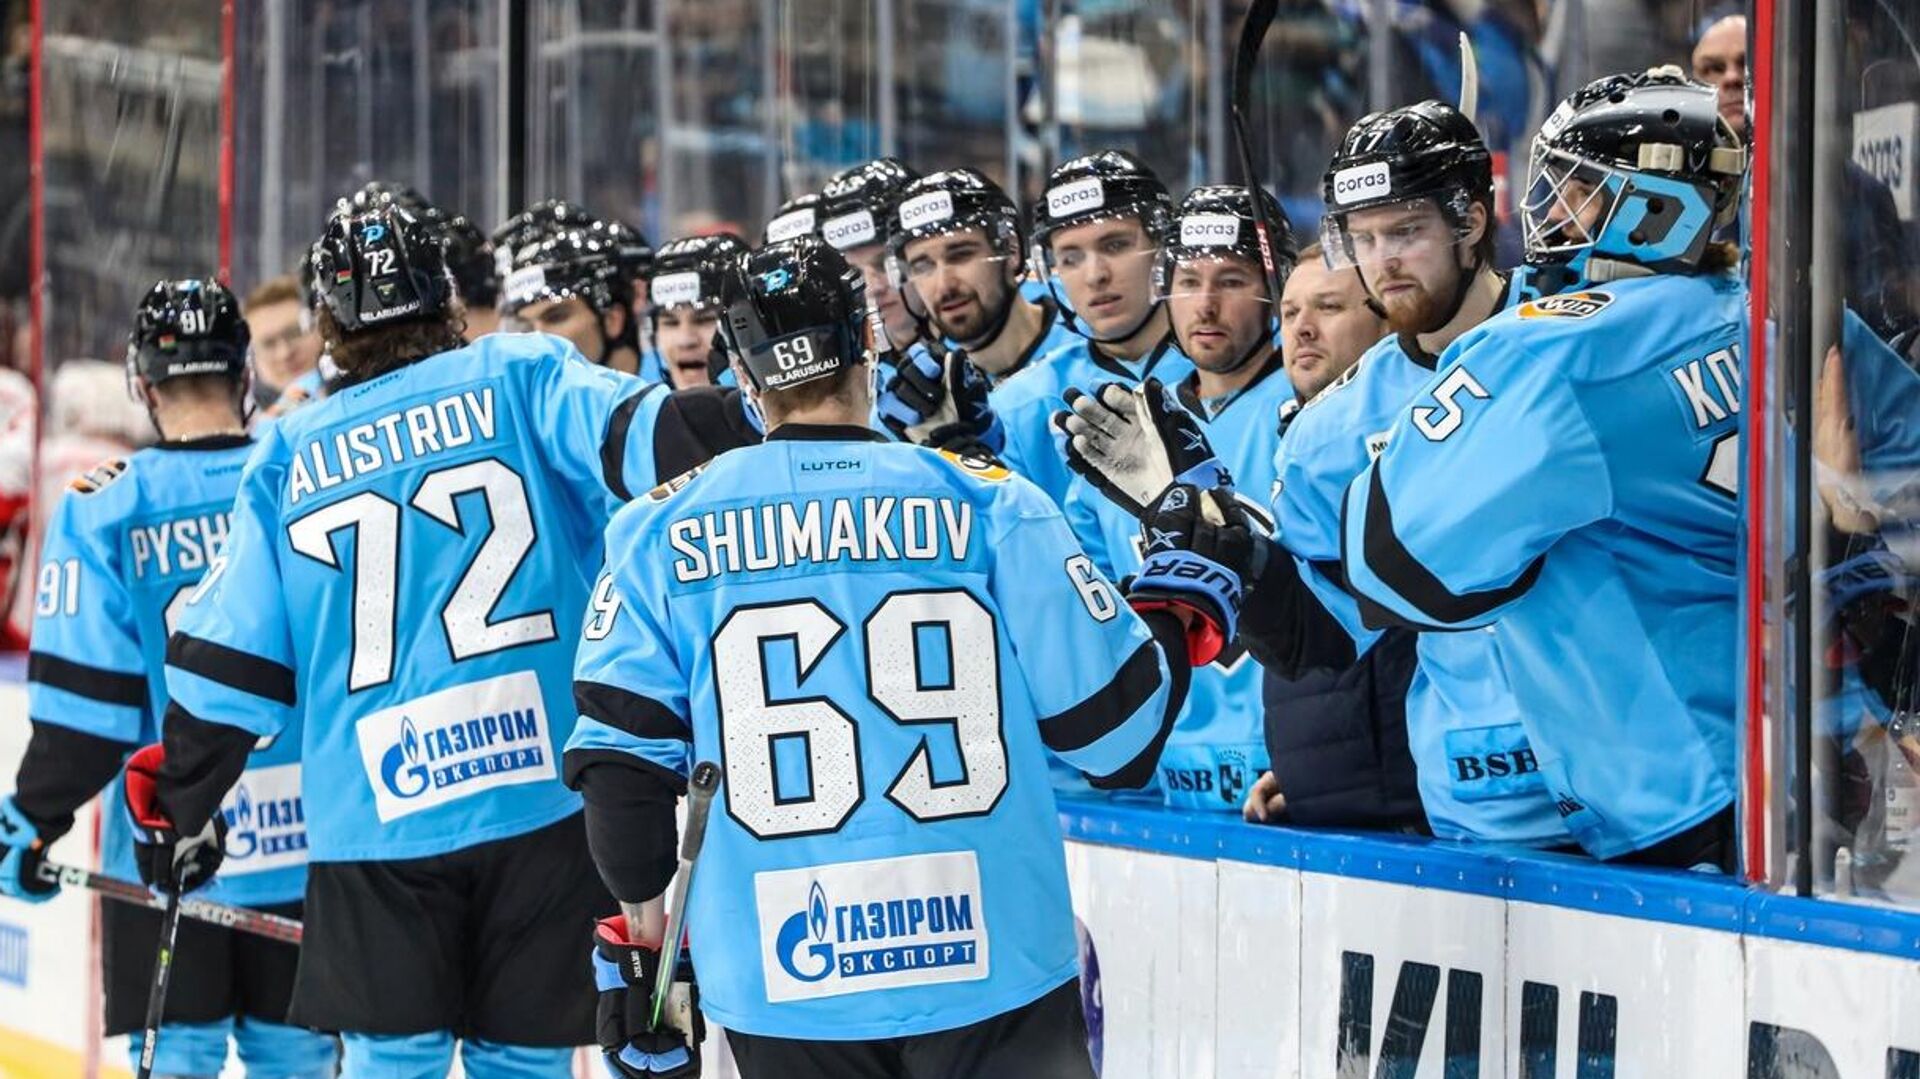 Липский остался доволен победой минского «Динамо» над «Сочи» в КХЛ